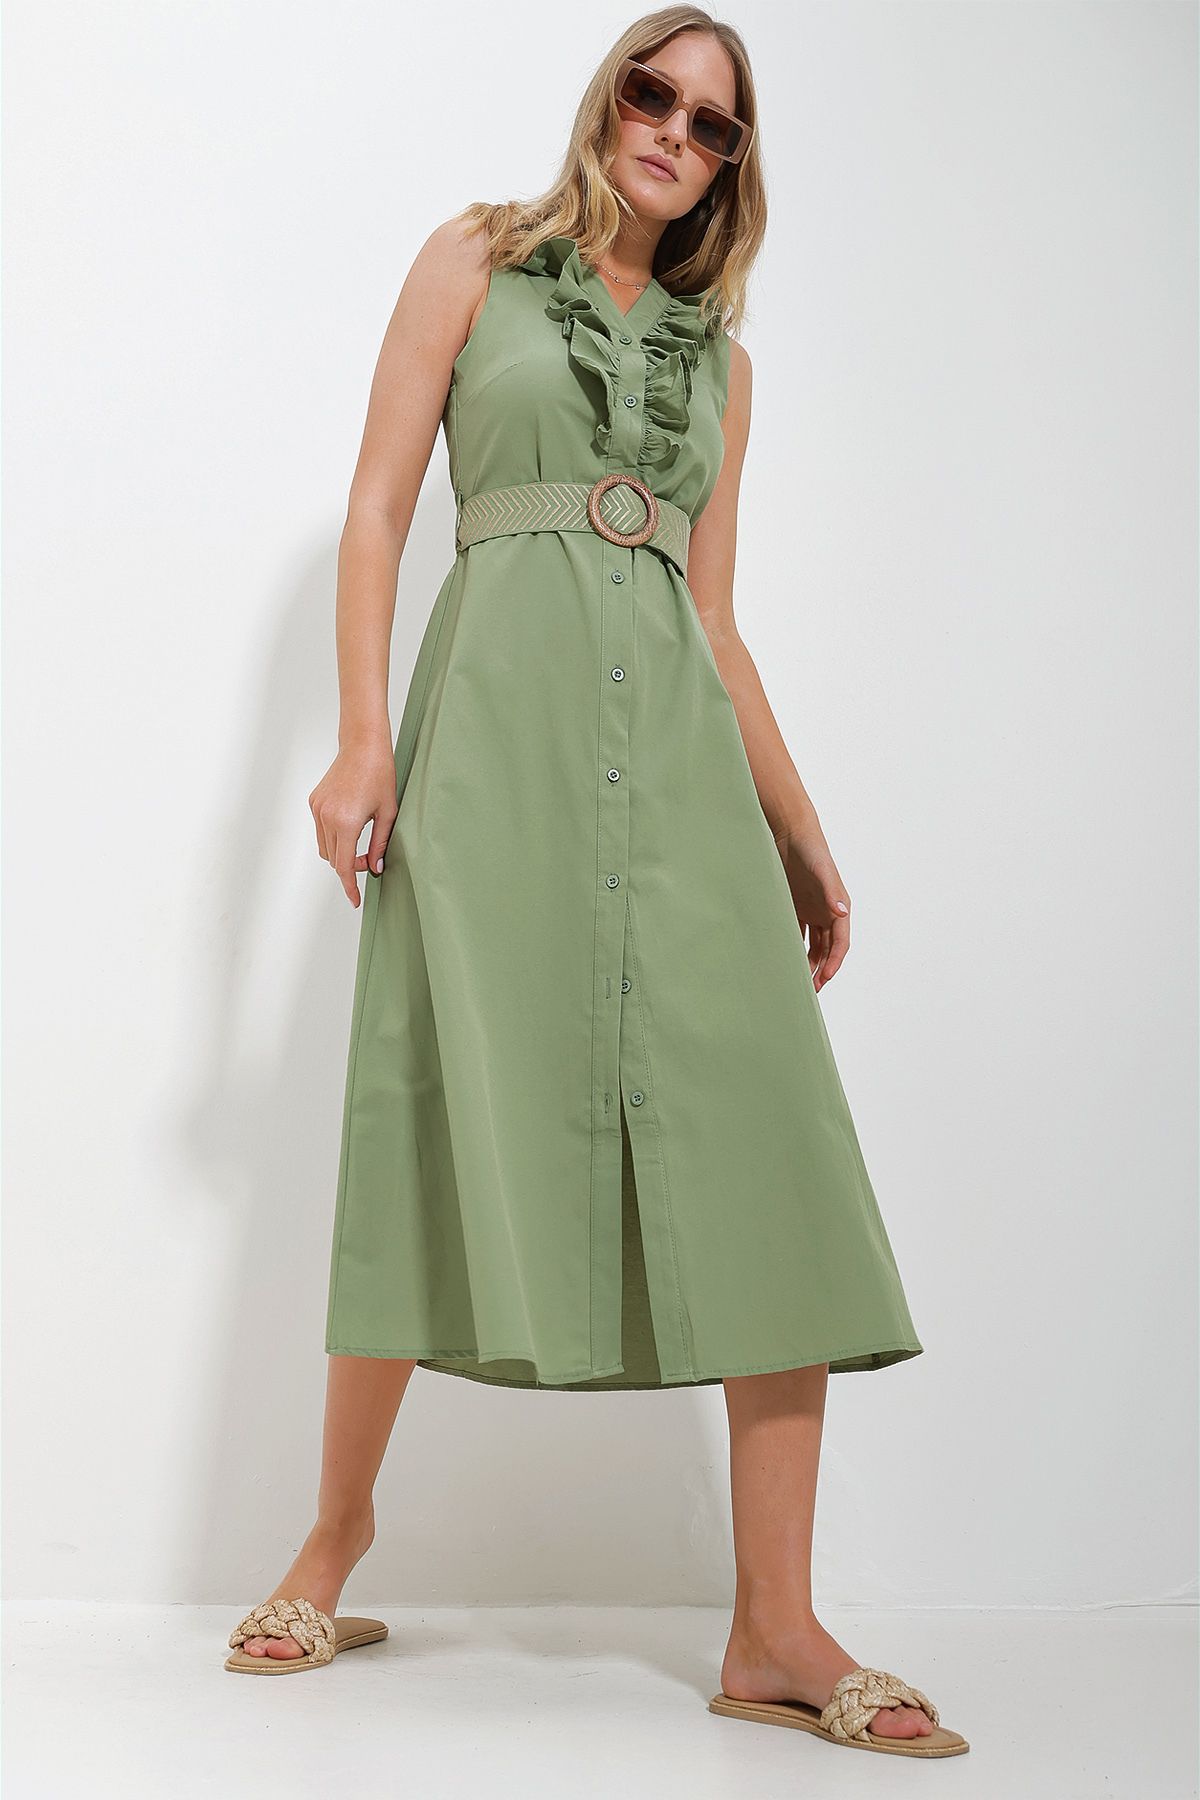 Trend Alaçatı Stili Kadın Haki Önü Fırfırlı Kemerli Poplin Dokuma Elbise ALC-X11609